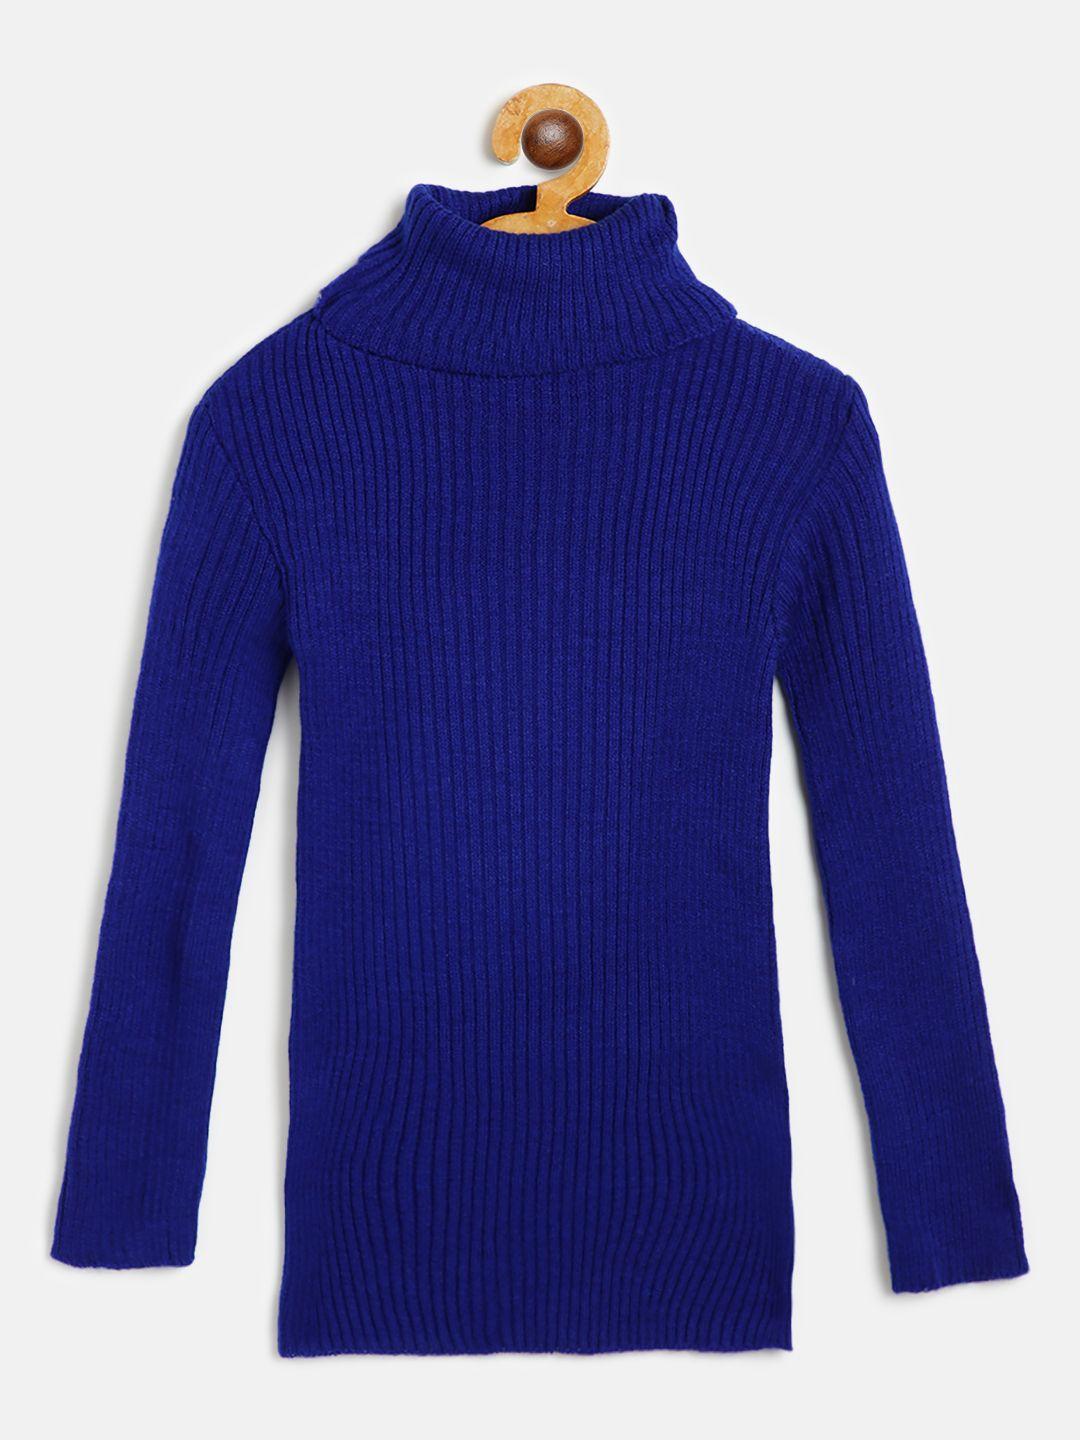 ad & av boys blue ribbed woollen pullover